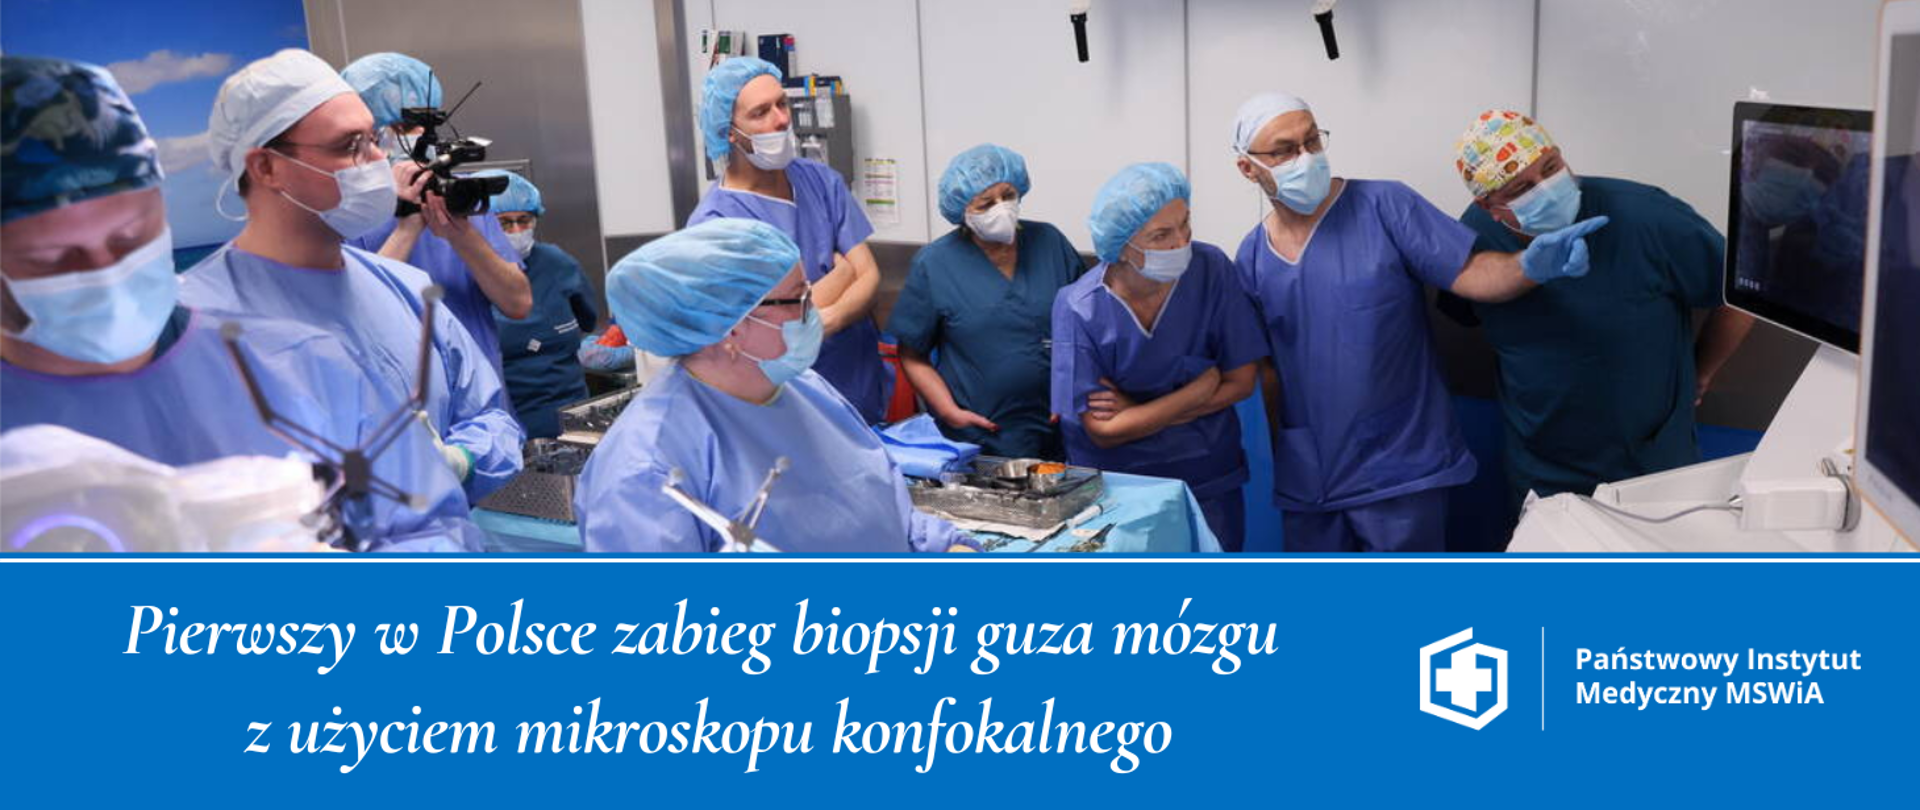 Pierwszy w Polsce zabieg biopsji guza mózgu z użyciem mikroskopu konfokalnego